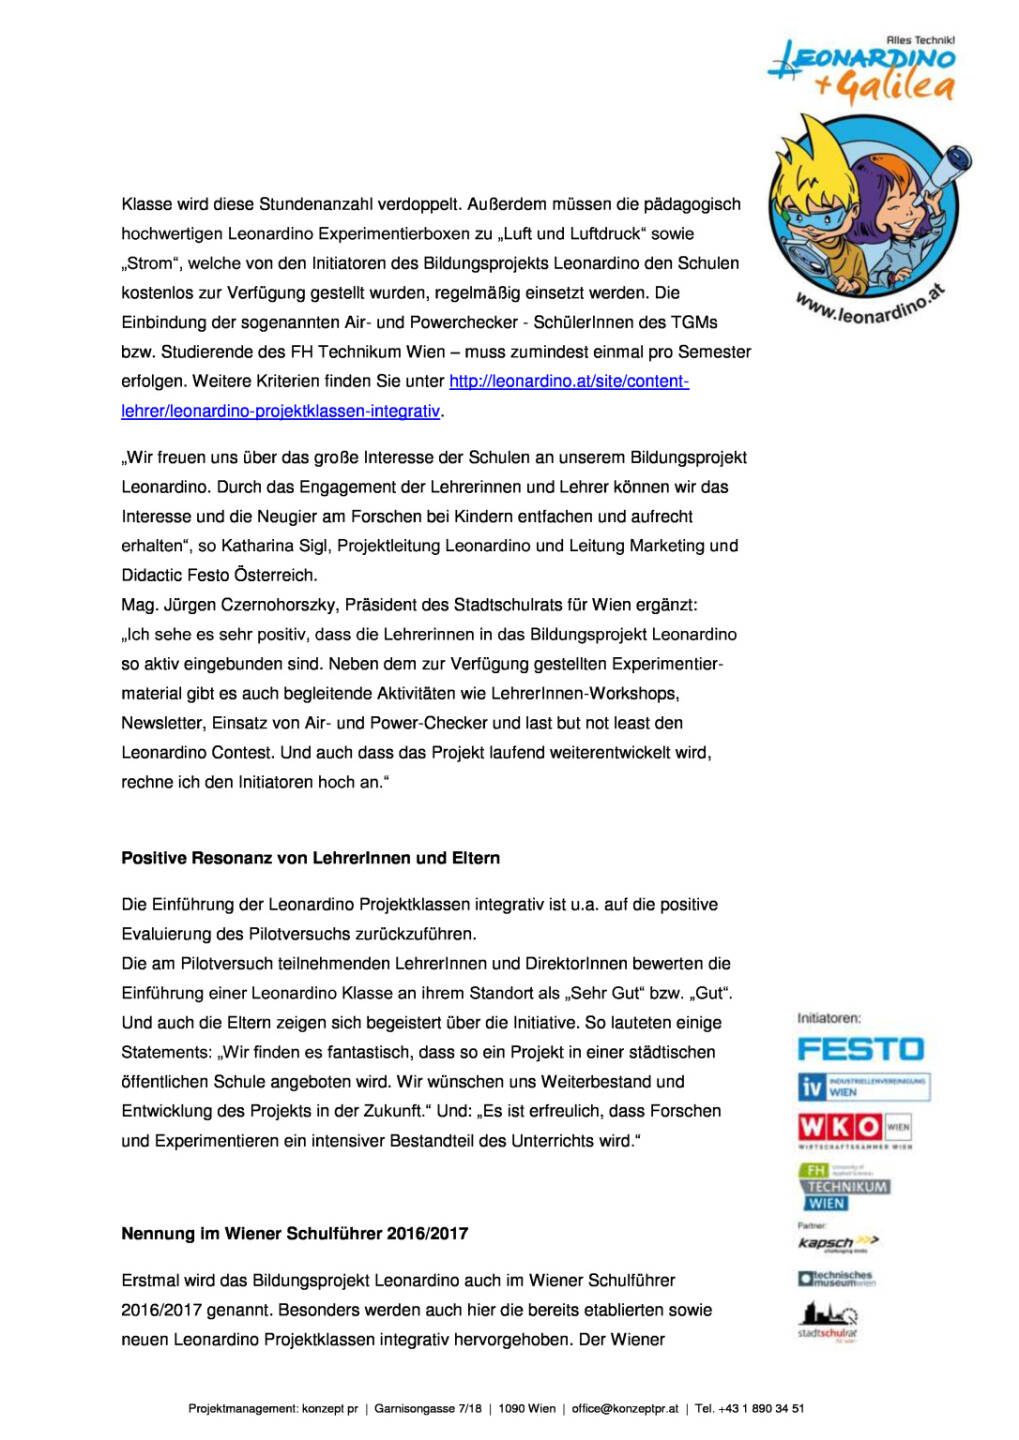 Festo: Bildungsprojekt Leonardino, Seite 2/4, komplettes Dokument unter http://boerse-social.com/static/uploads/file_1712_festo_bildungsprojekt_leonardino.pdf